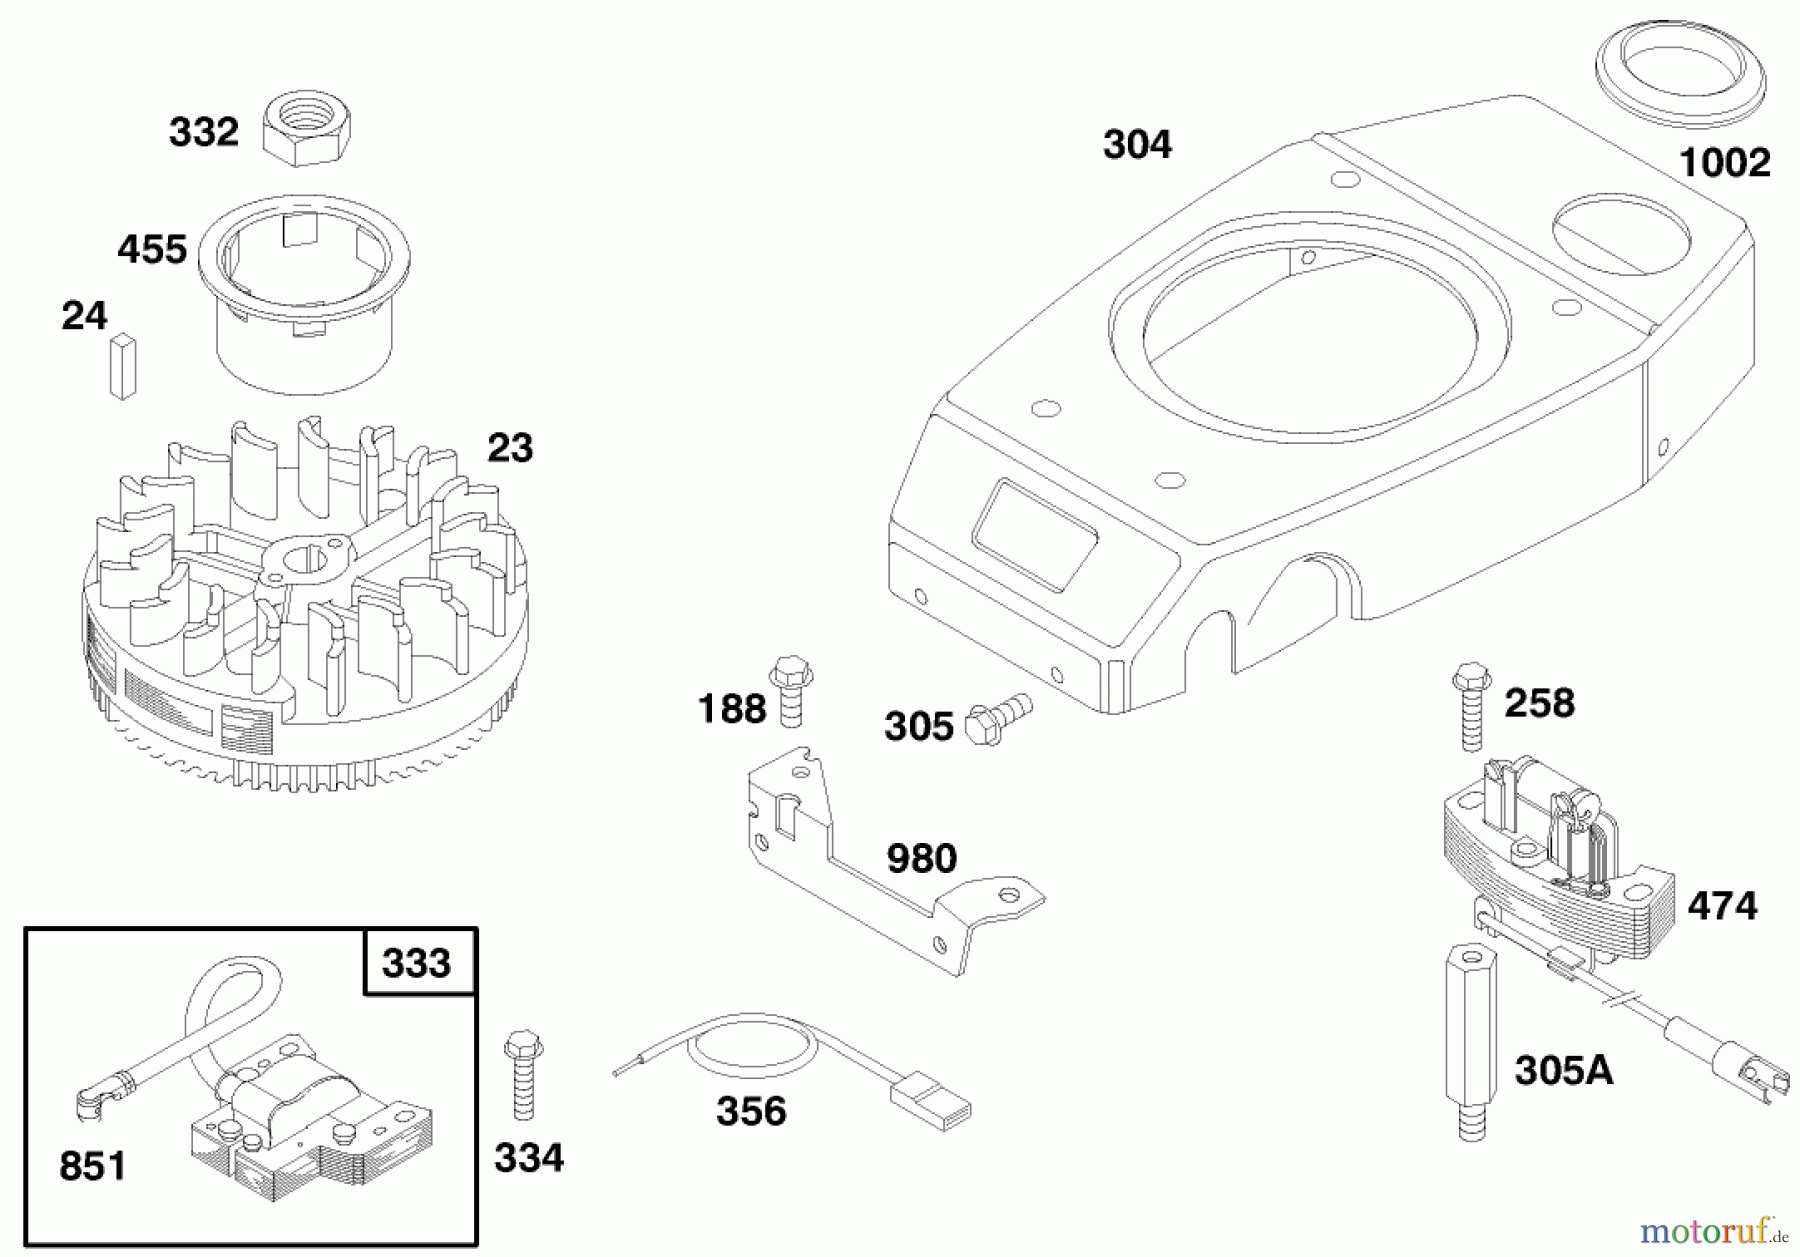  Toro Neu Mowers, Walk-Behind Seite 1 20476 - Toro Lawnmower, 1996 (6900001-6999999) ENGINE GTS 150 (MODEL NO. 20476 ONLY) #7